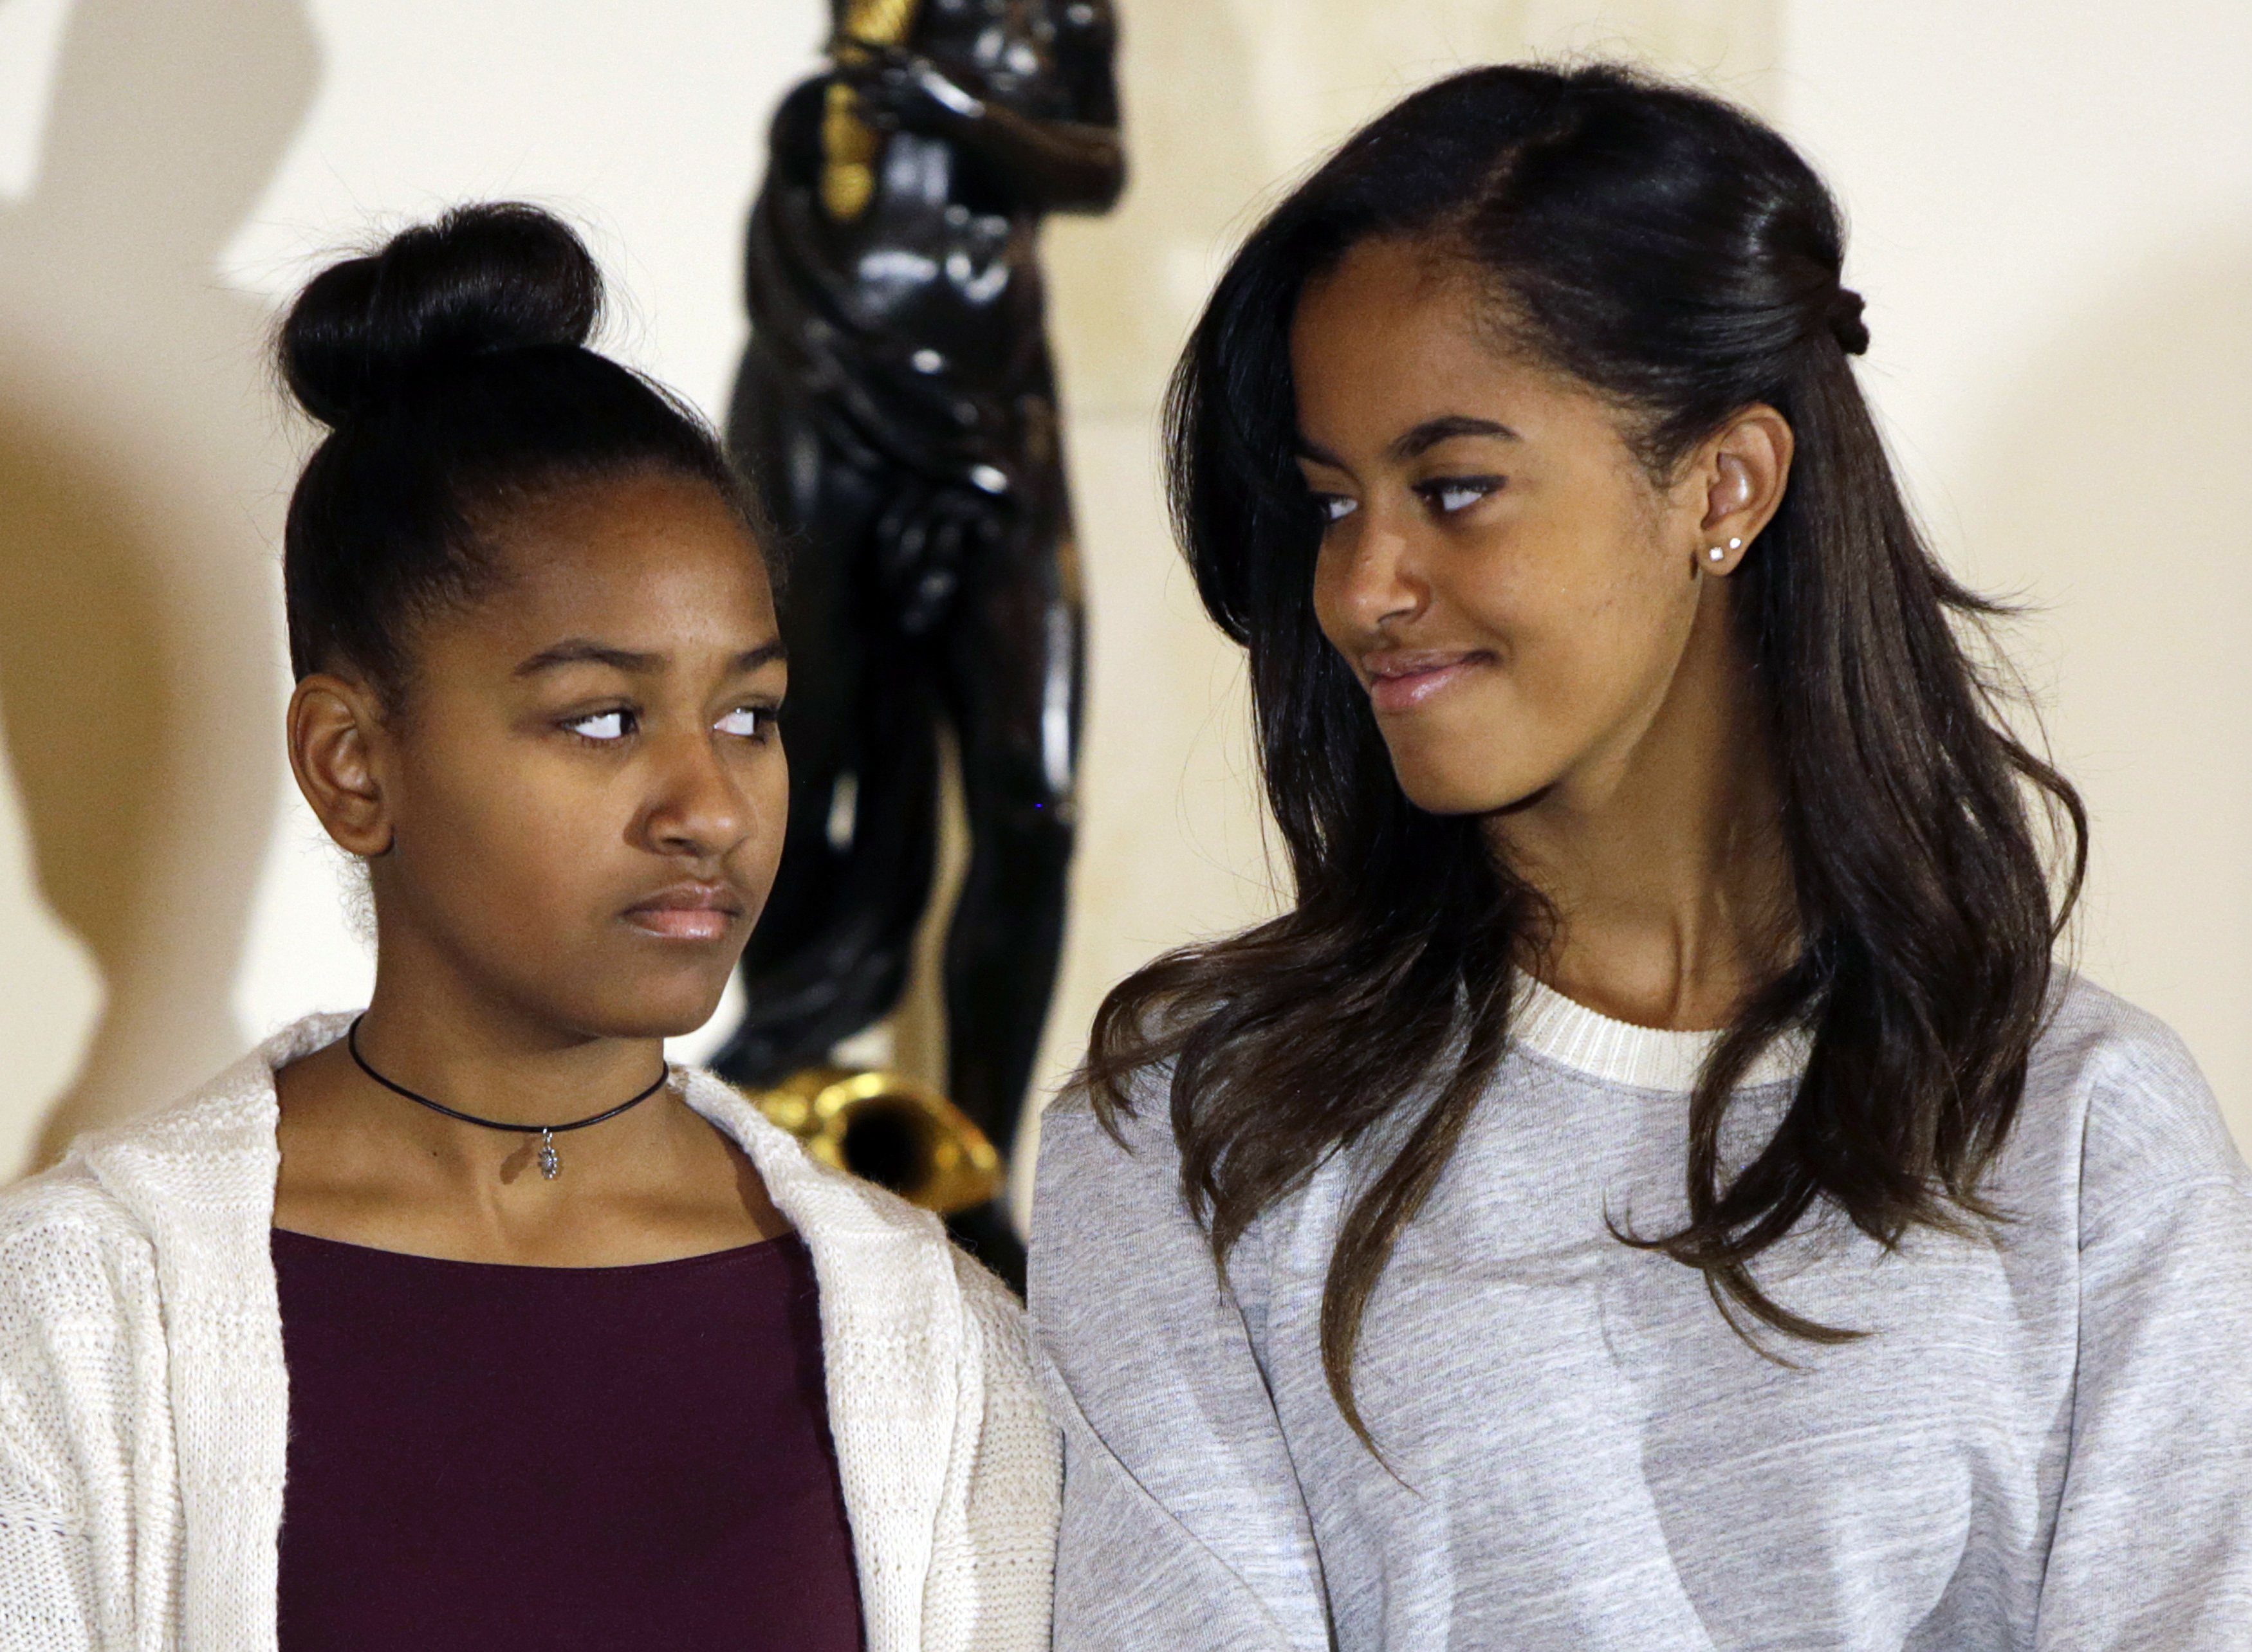 La asesora republicana que criticó a las hijas de Obama dijo que renunciará